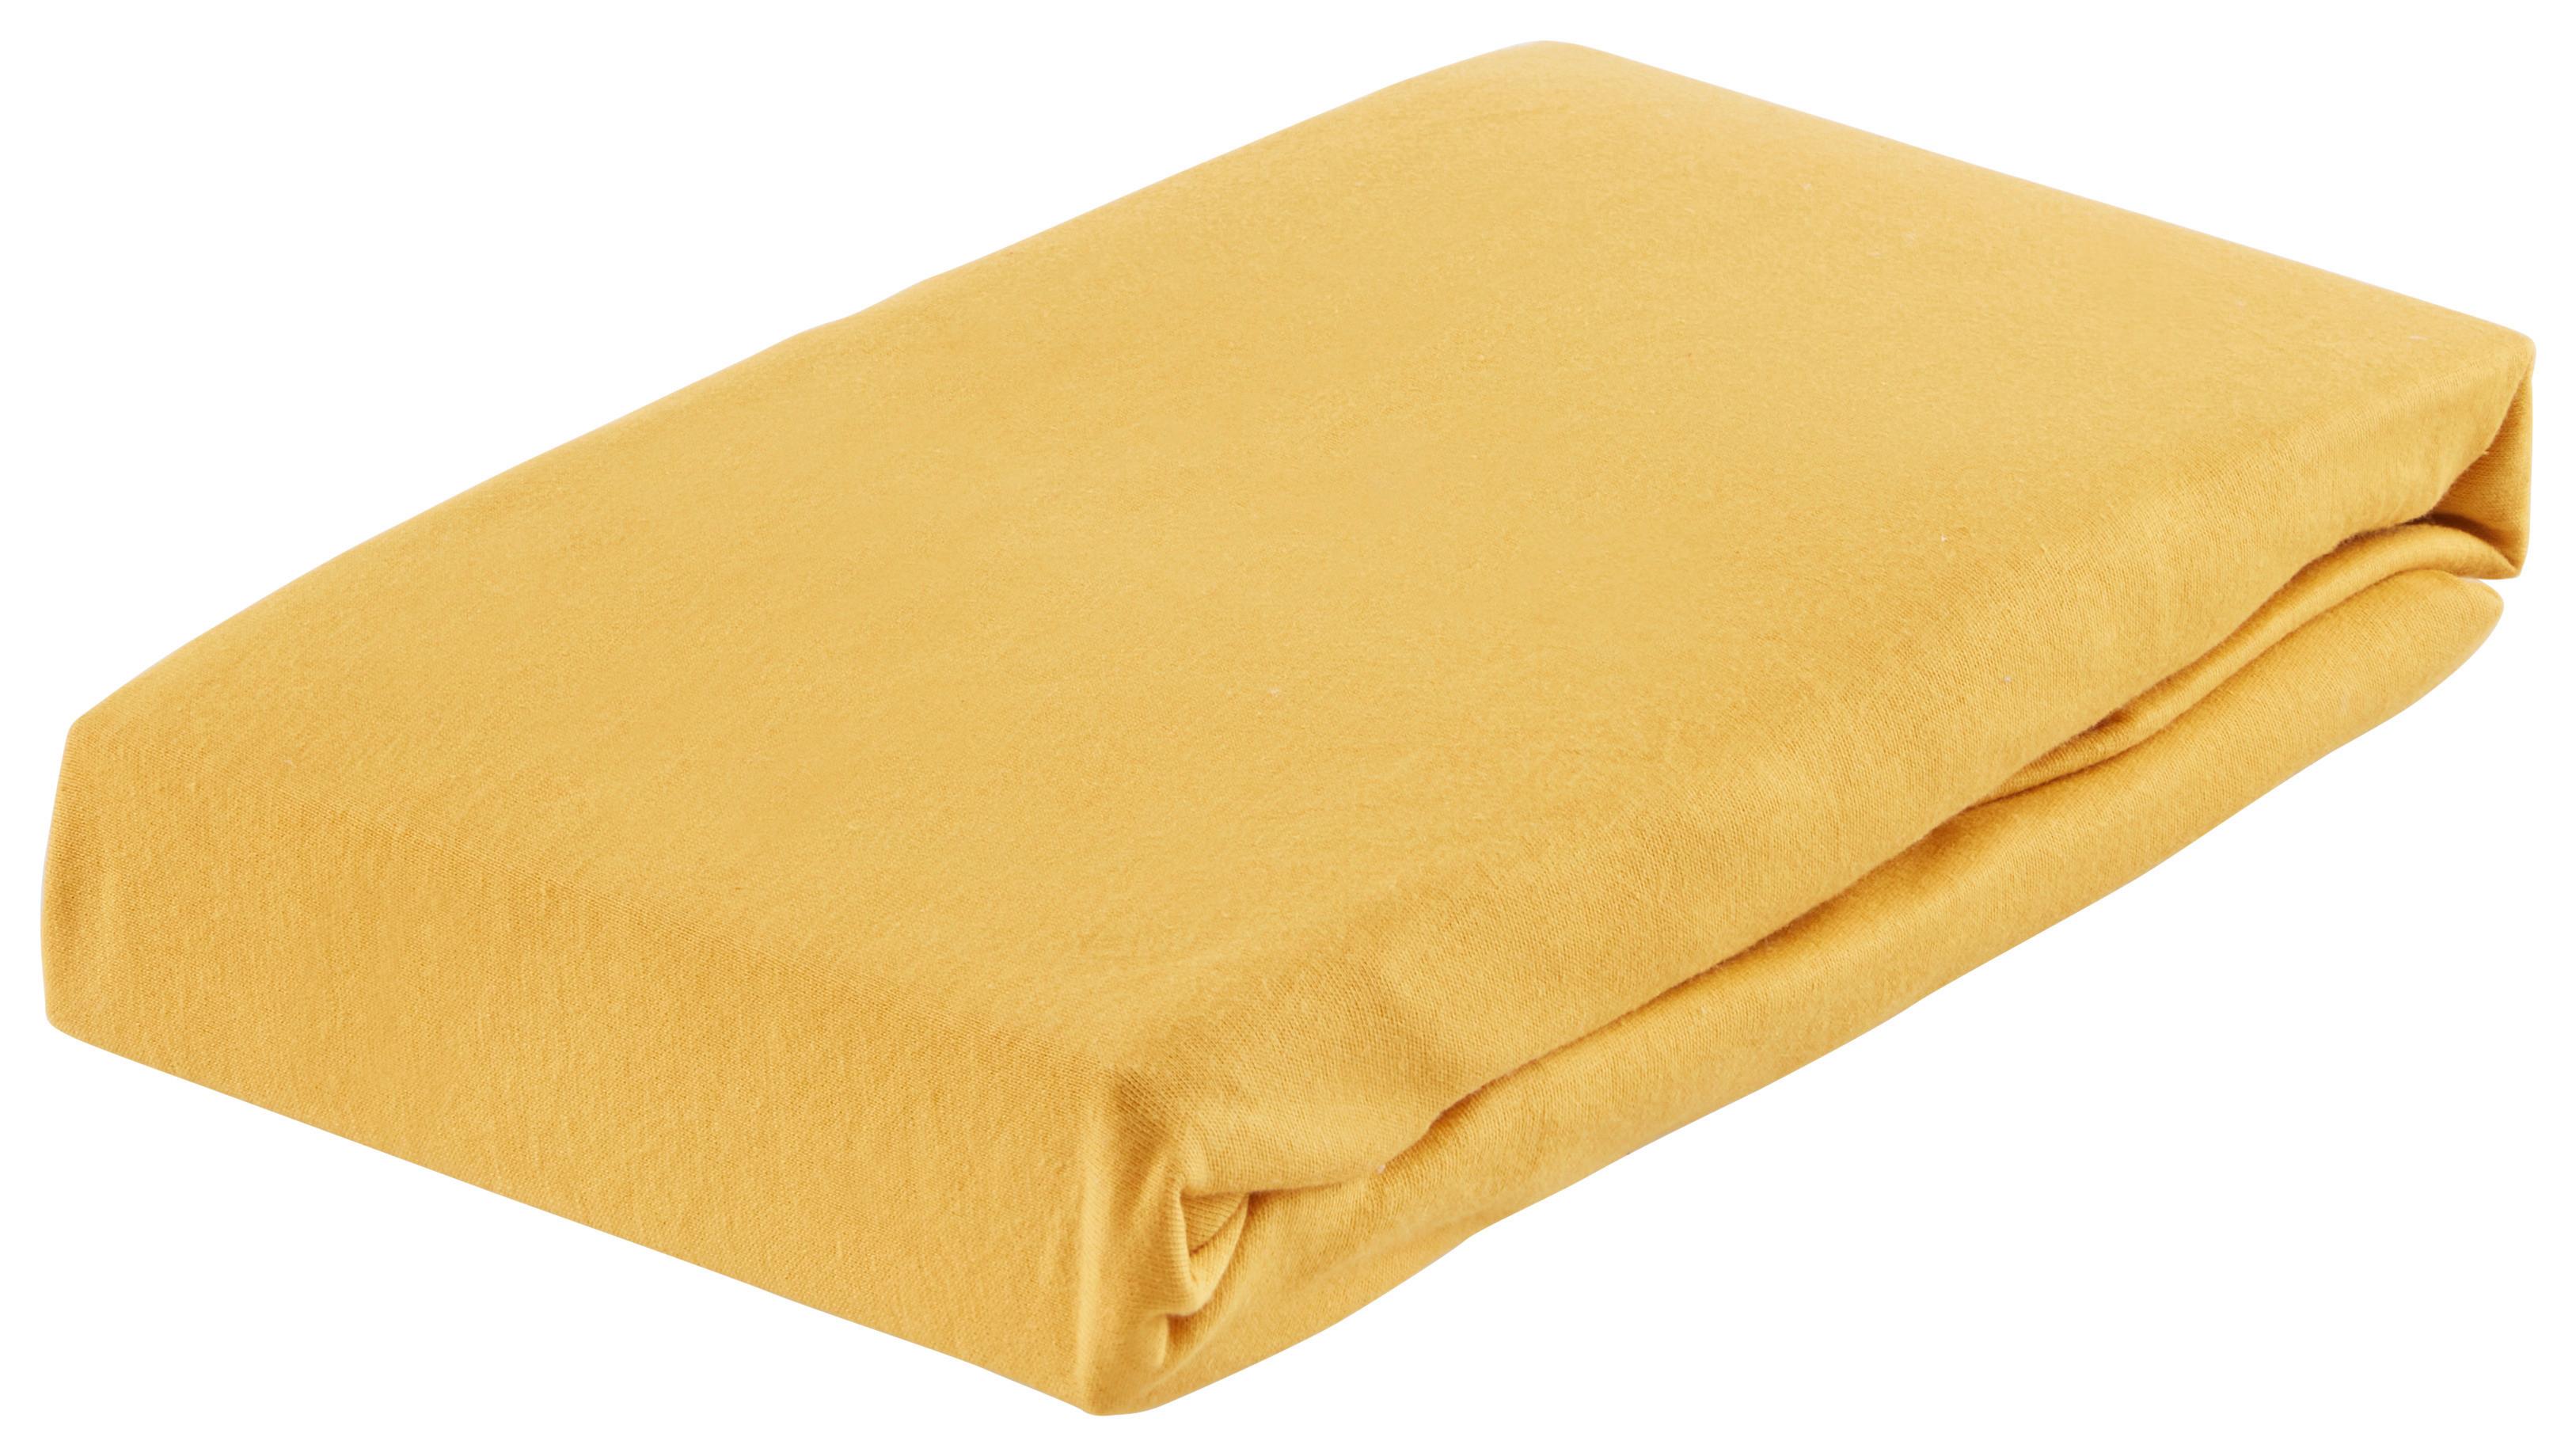 Elastické Prostěradlo Basic, 150/200cm, Žlutá - tmavě žlutá, textil (150/200cm) - Modern Living